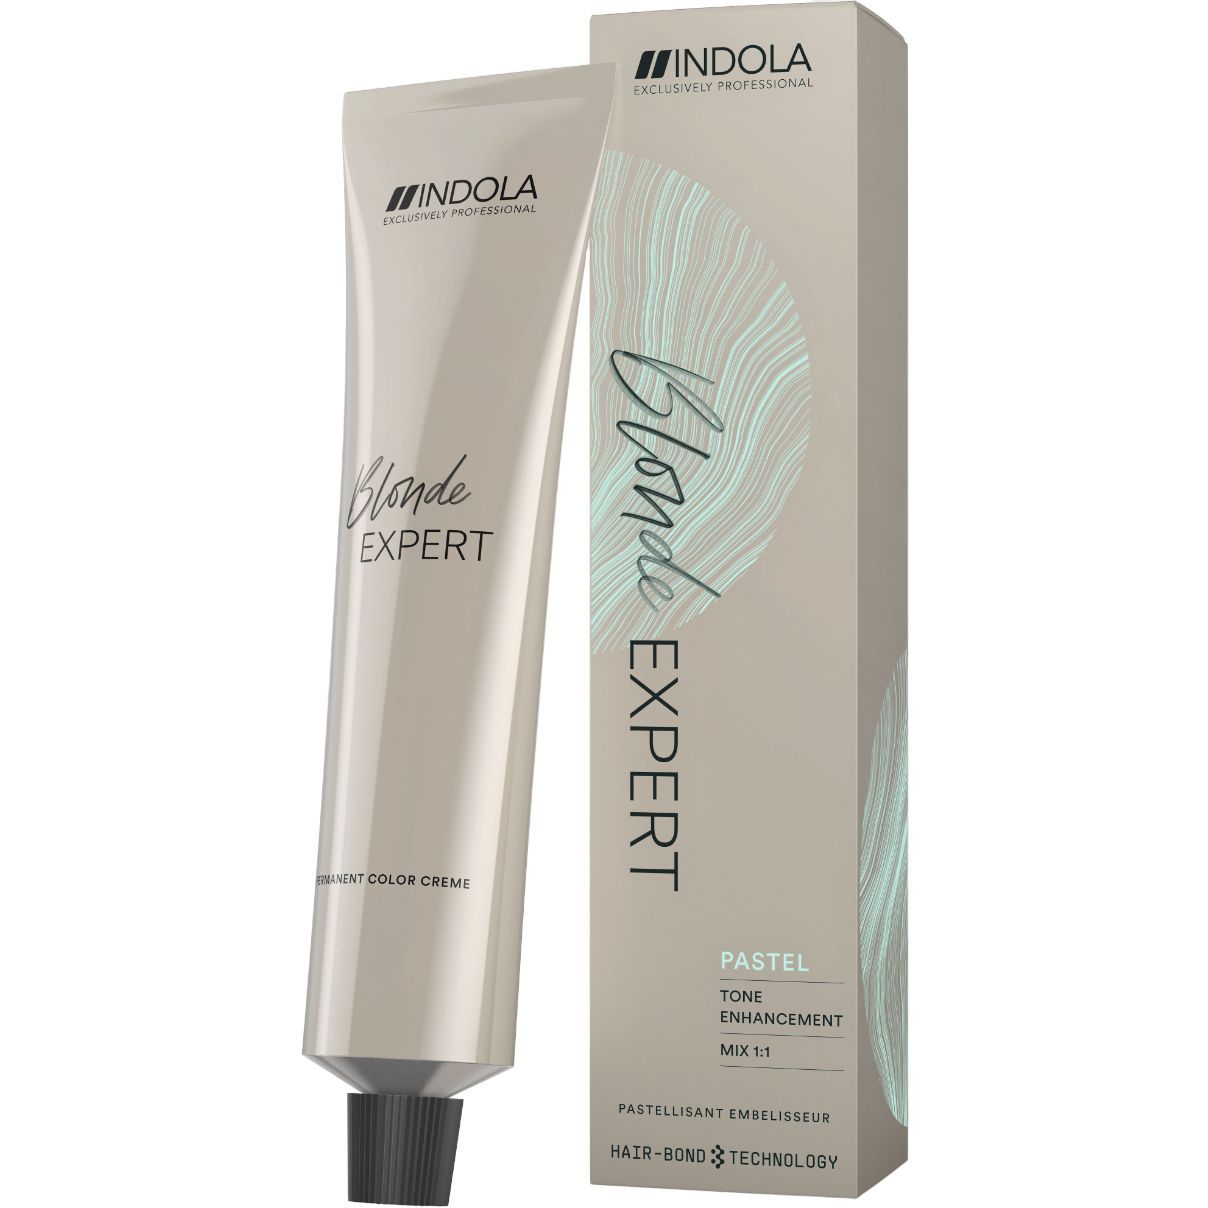 Перманентна крем-фарба для освітлення волосся Indola Blonde Expert, відтінок 1000.0 (Натуральний), 60 мл (2148914) - фото 1